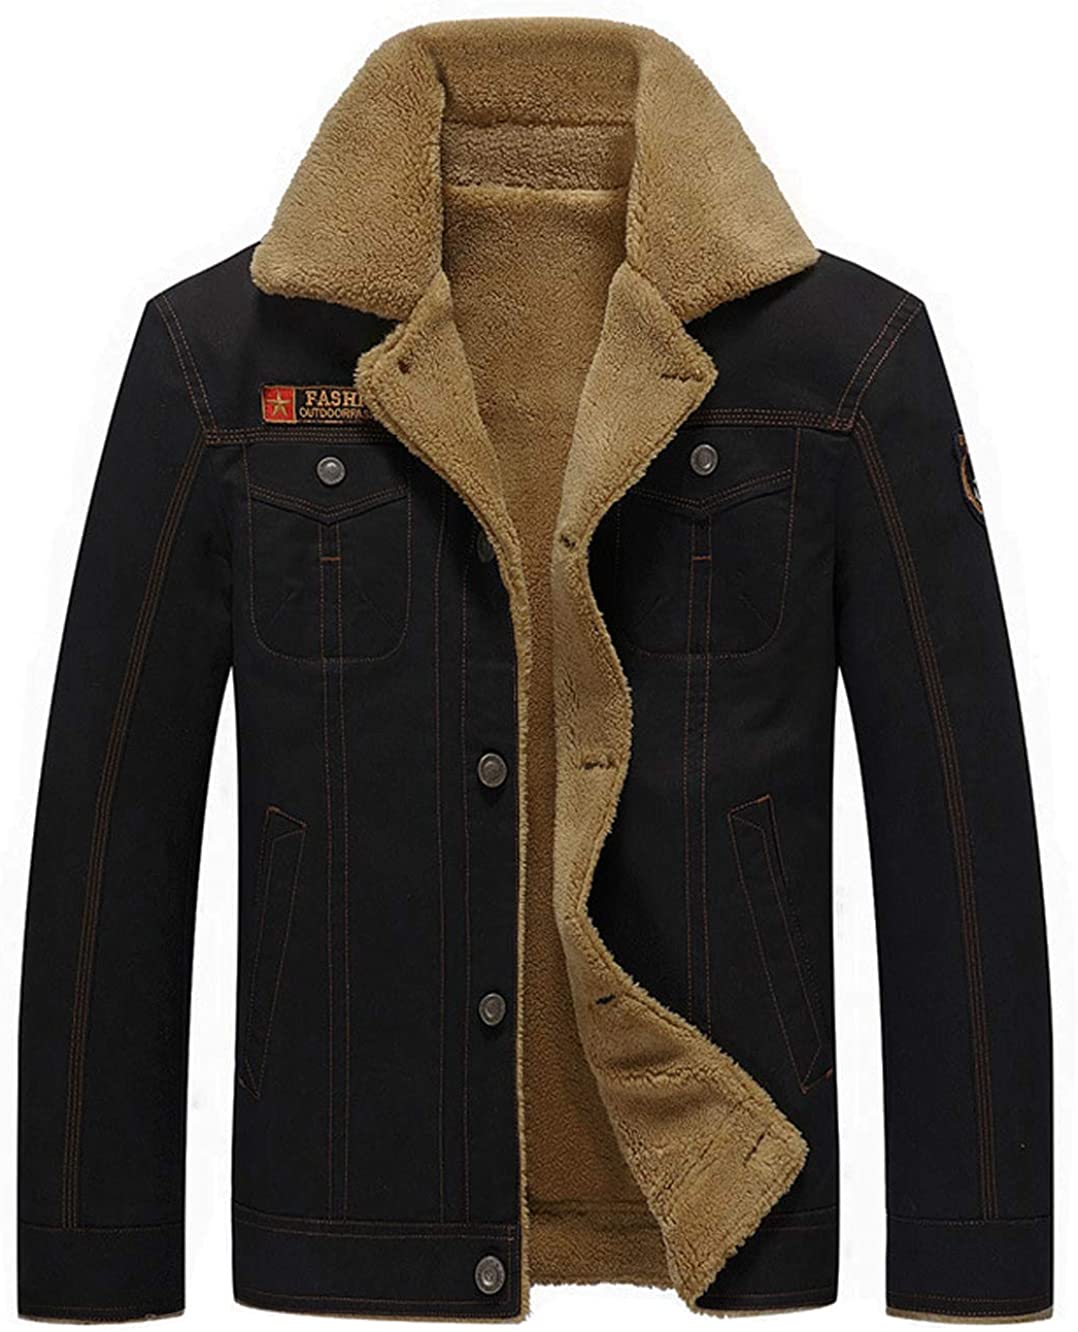 Fuwenni Men's Winter Jacket Sherpa Lined Fleece Jacket Fur Collar Warm ...